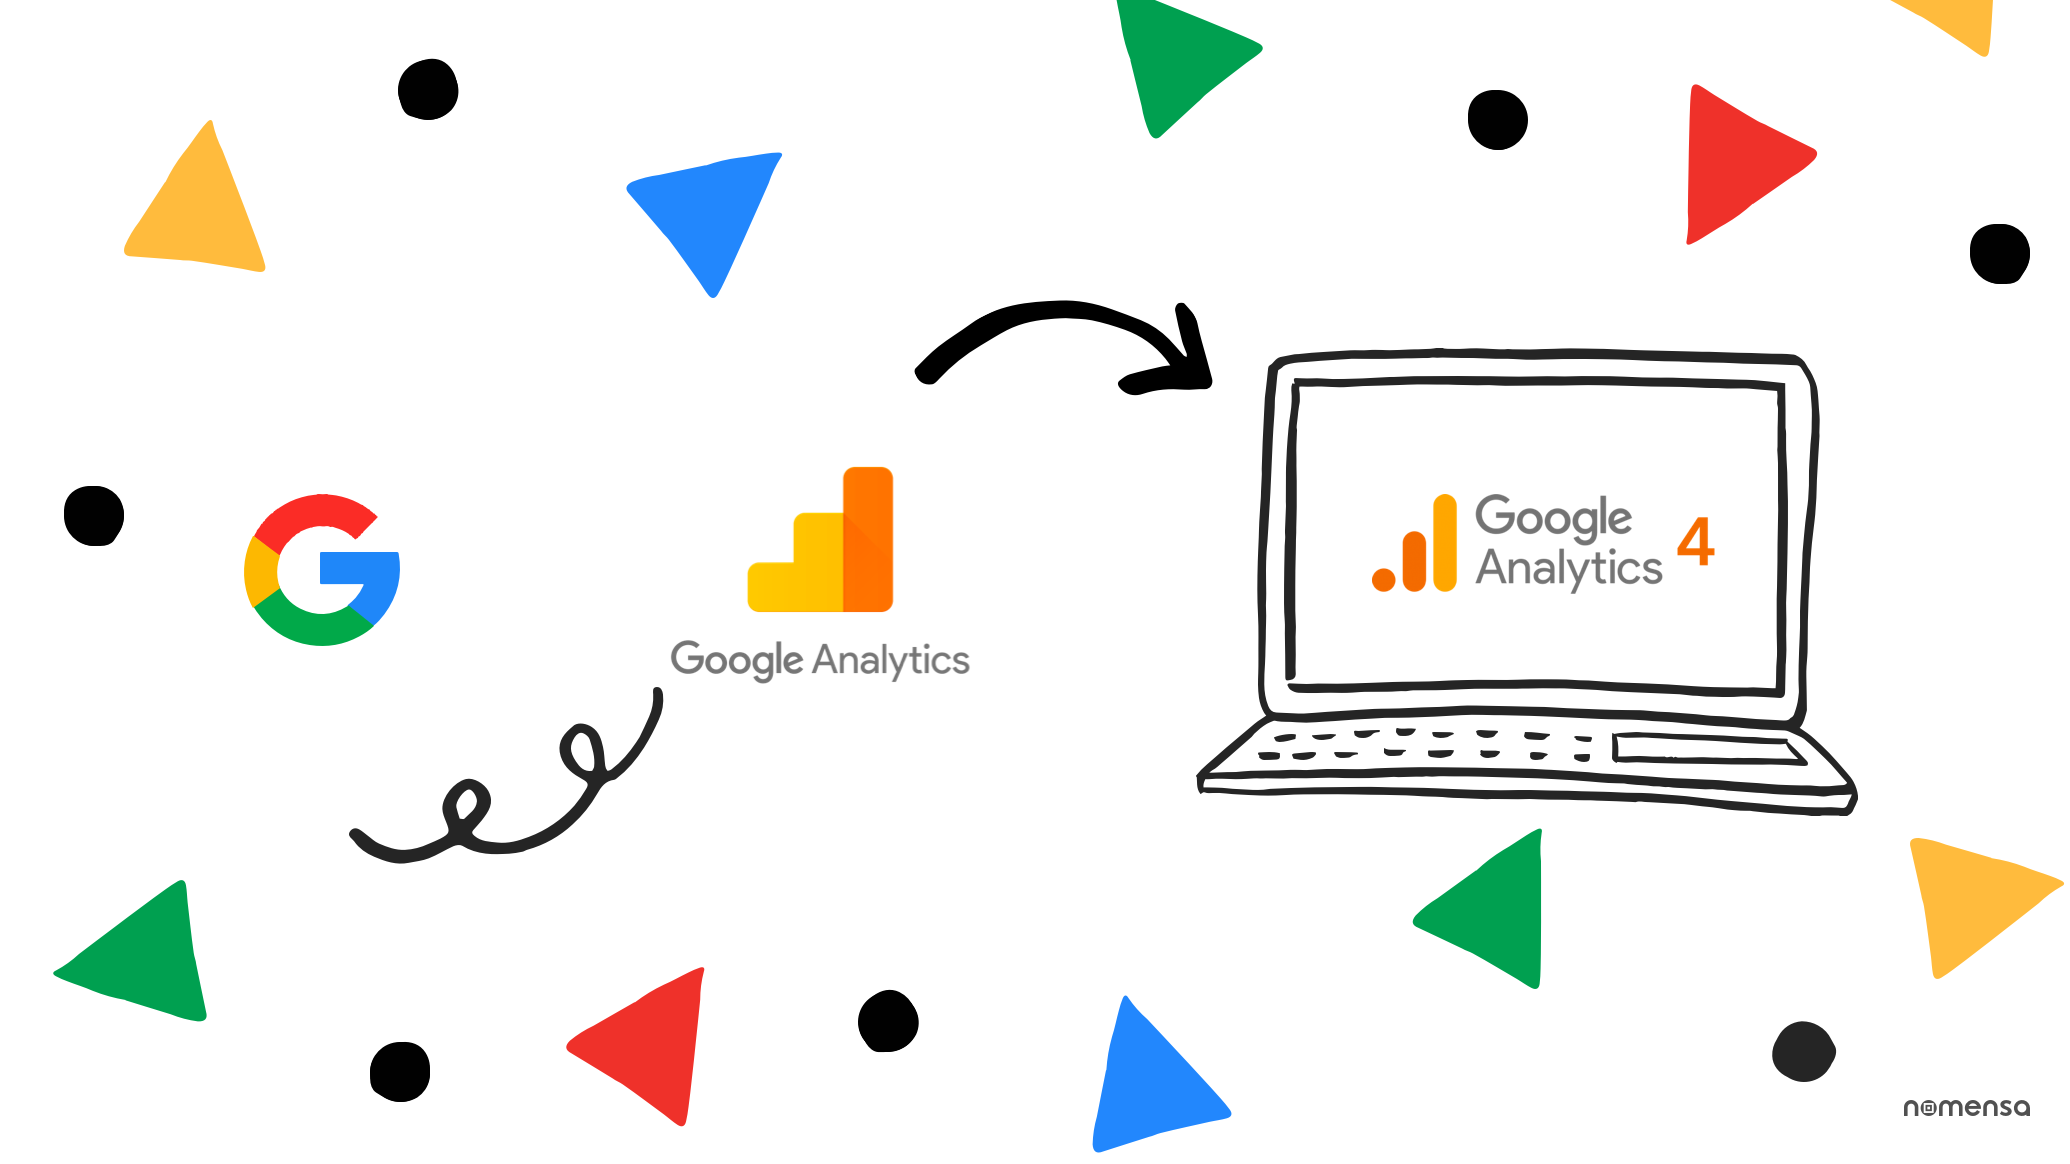 Analytics GA4: O Que É E O Que Muda Do Universal O Analytics GA4 é a nova versão do Google Analytics, trazendo recursos avançados de análise de dados e insights - Veja o que muda - Leia